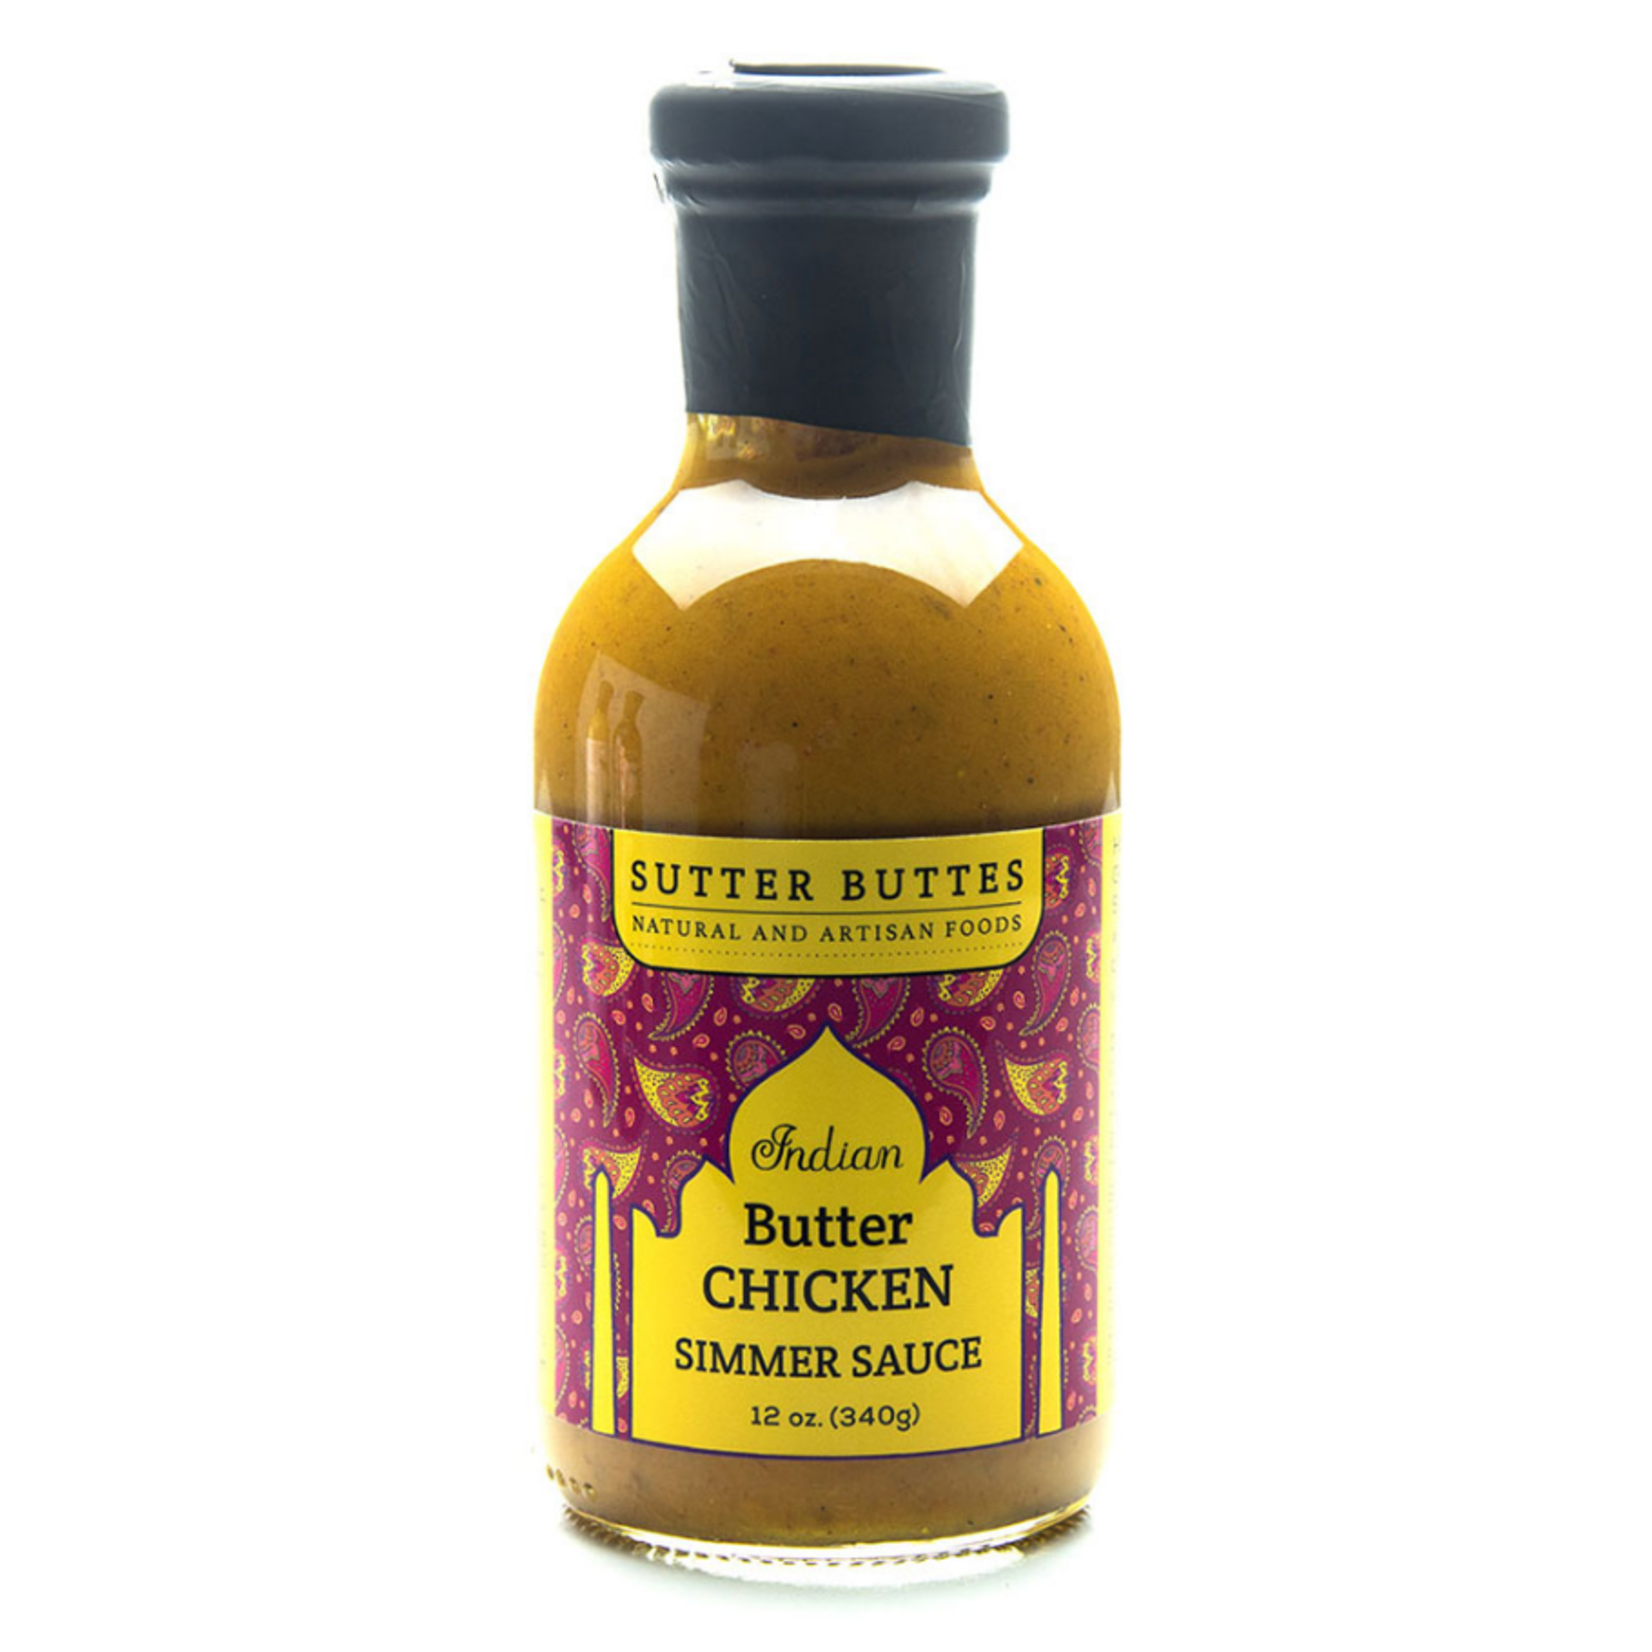 Sutter Buttes Indian Butter Chicken Simmer Sauce